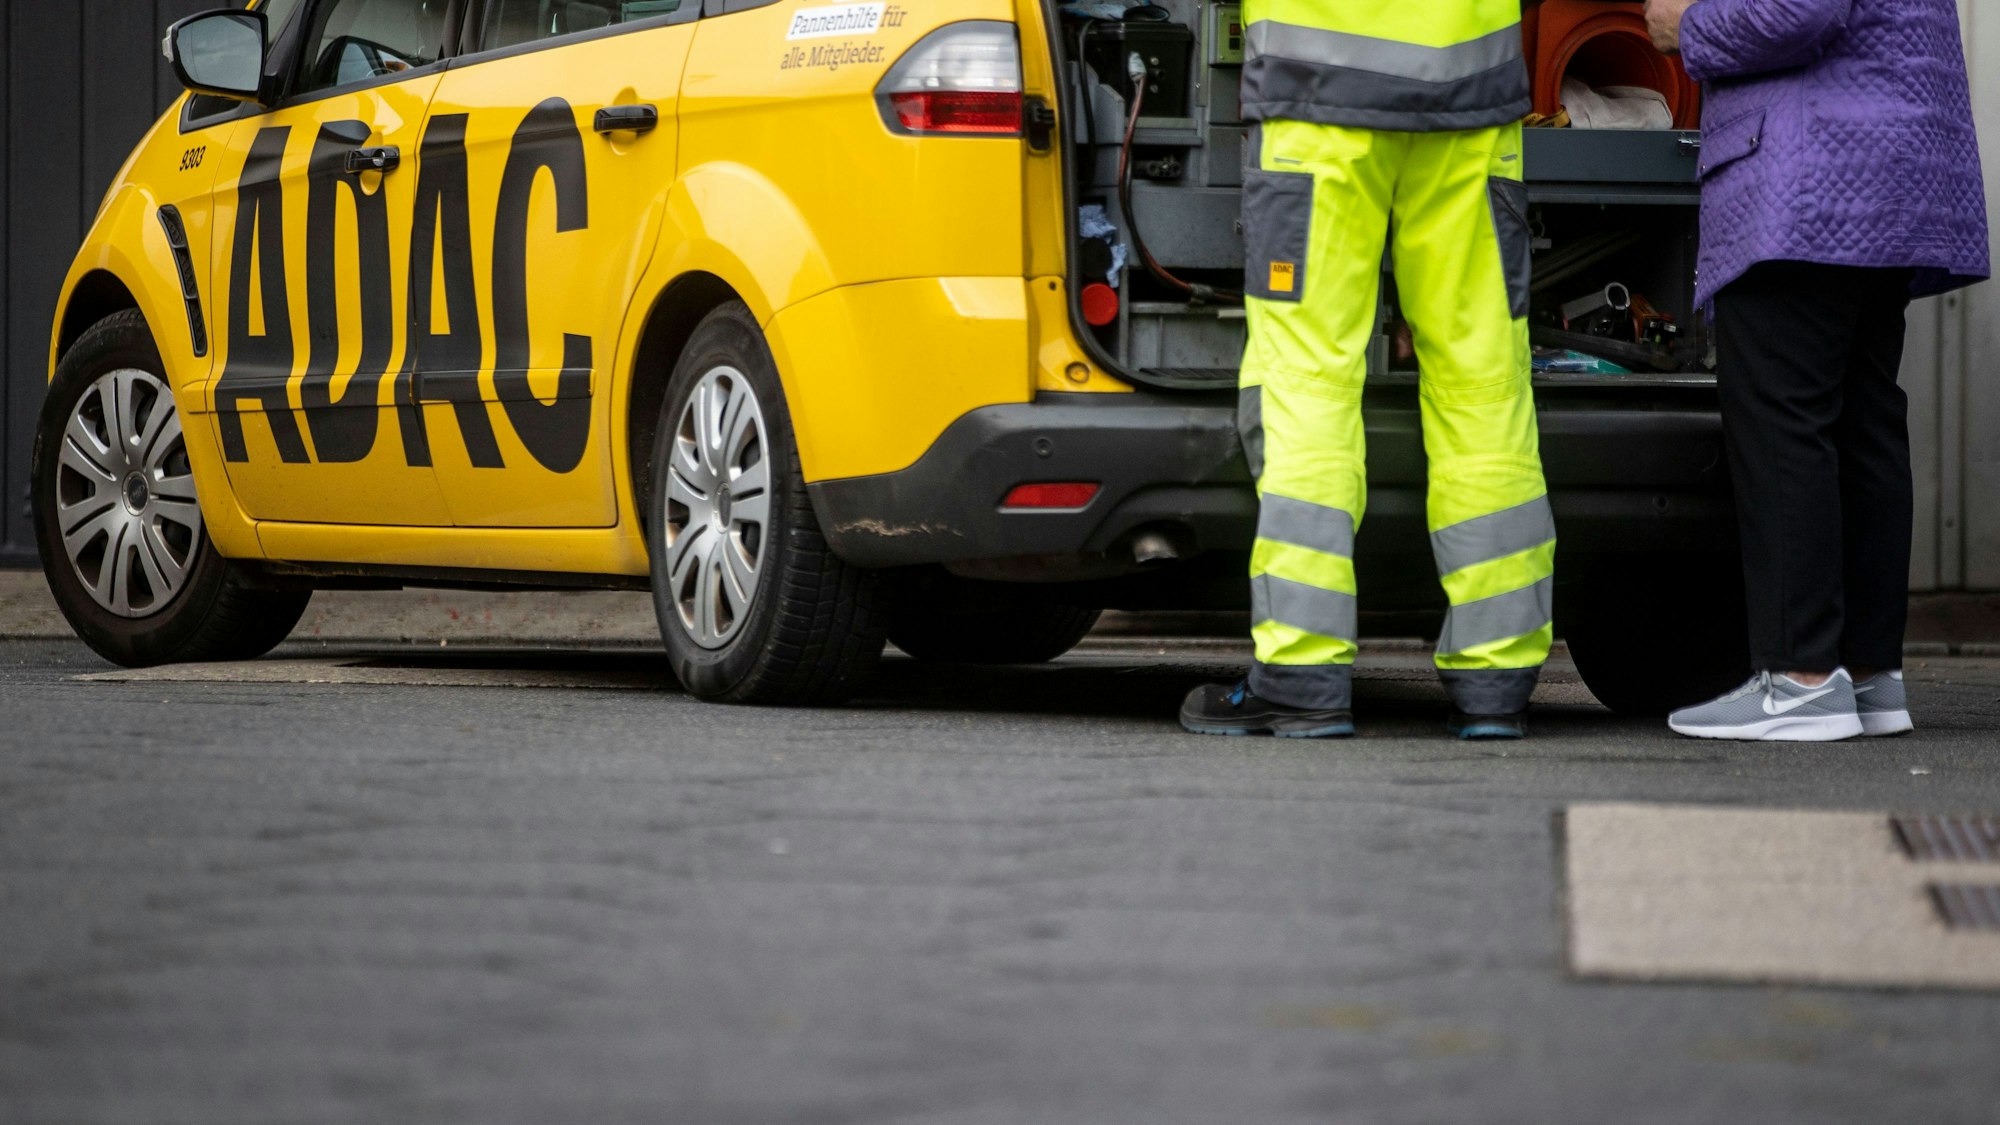 Ein Mitarbeiter des ADAC steht mit seinem gelben Fahrzeug an einer Straße in Duisburg und hilft einer Frau.